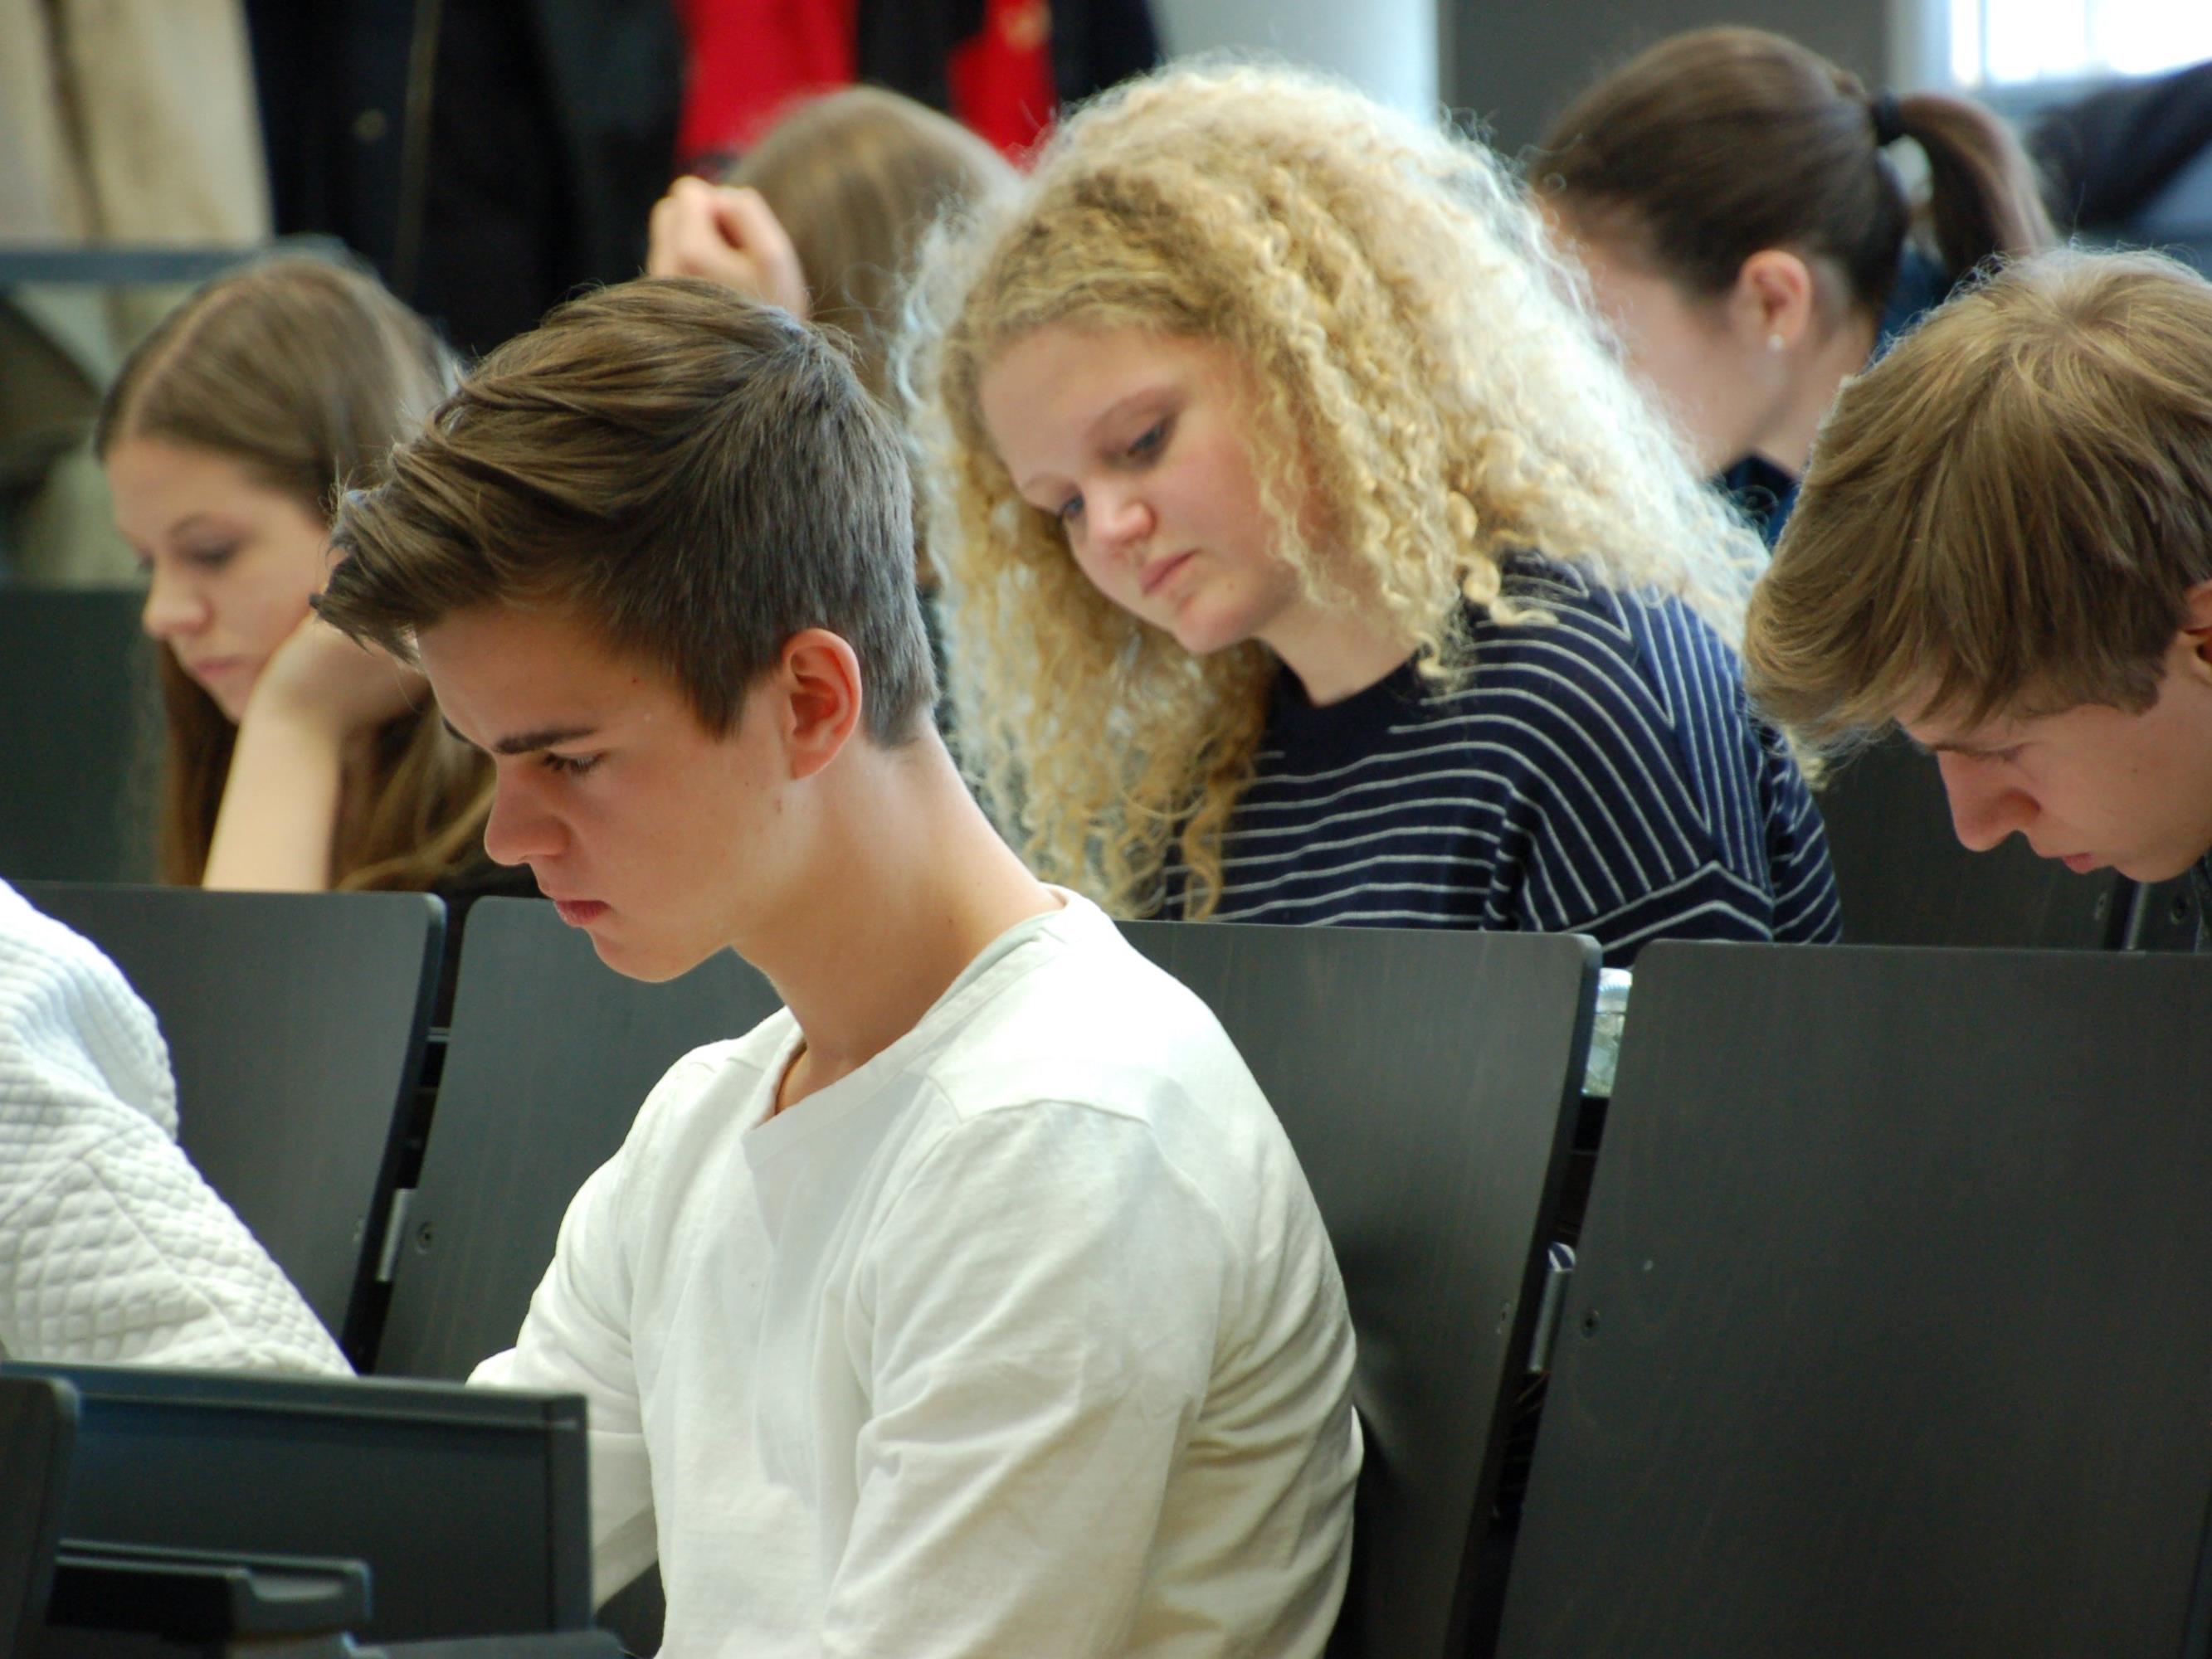 Über 130 junge Vorarlbergerinnen und Vorarlberger haben am Probetest für den Aufnahmetest zum Medizinstudium teilgenommen.